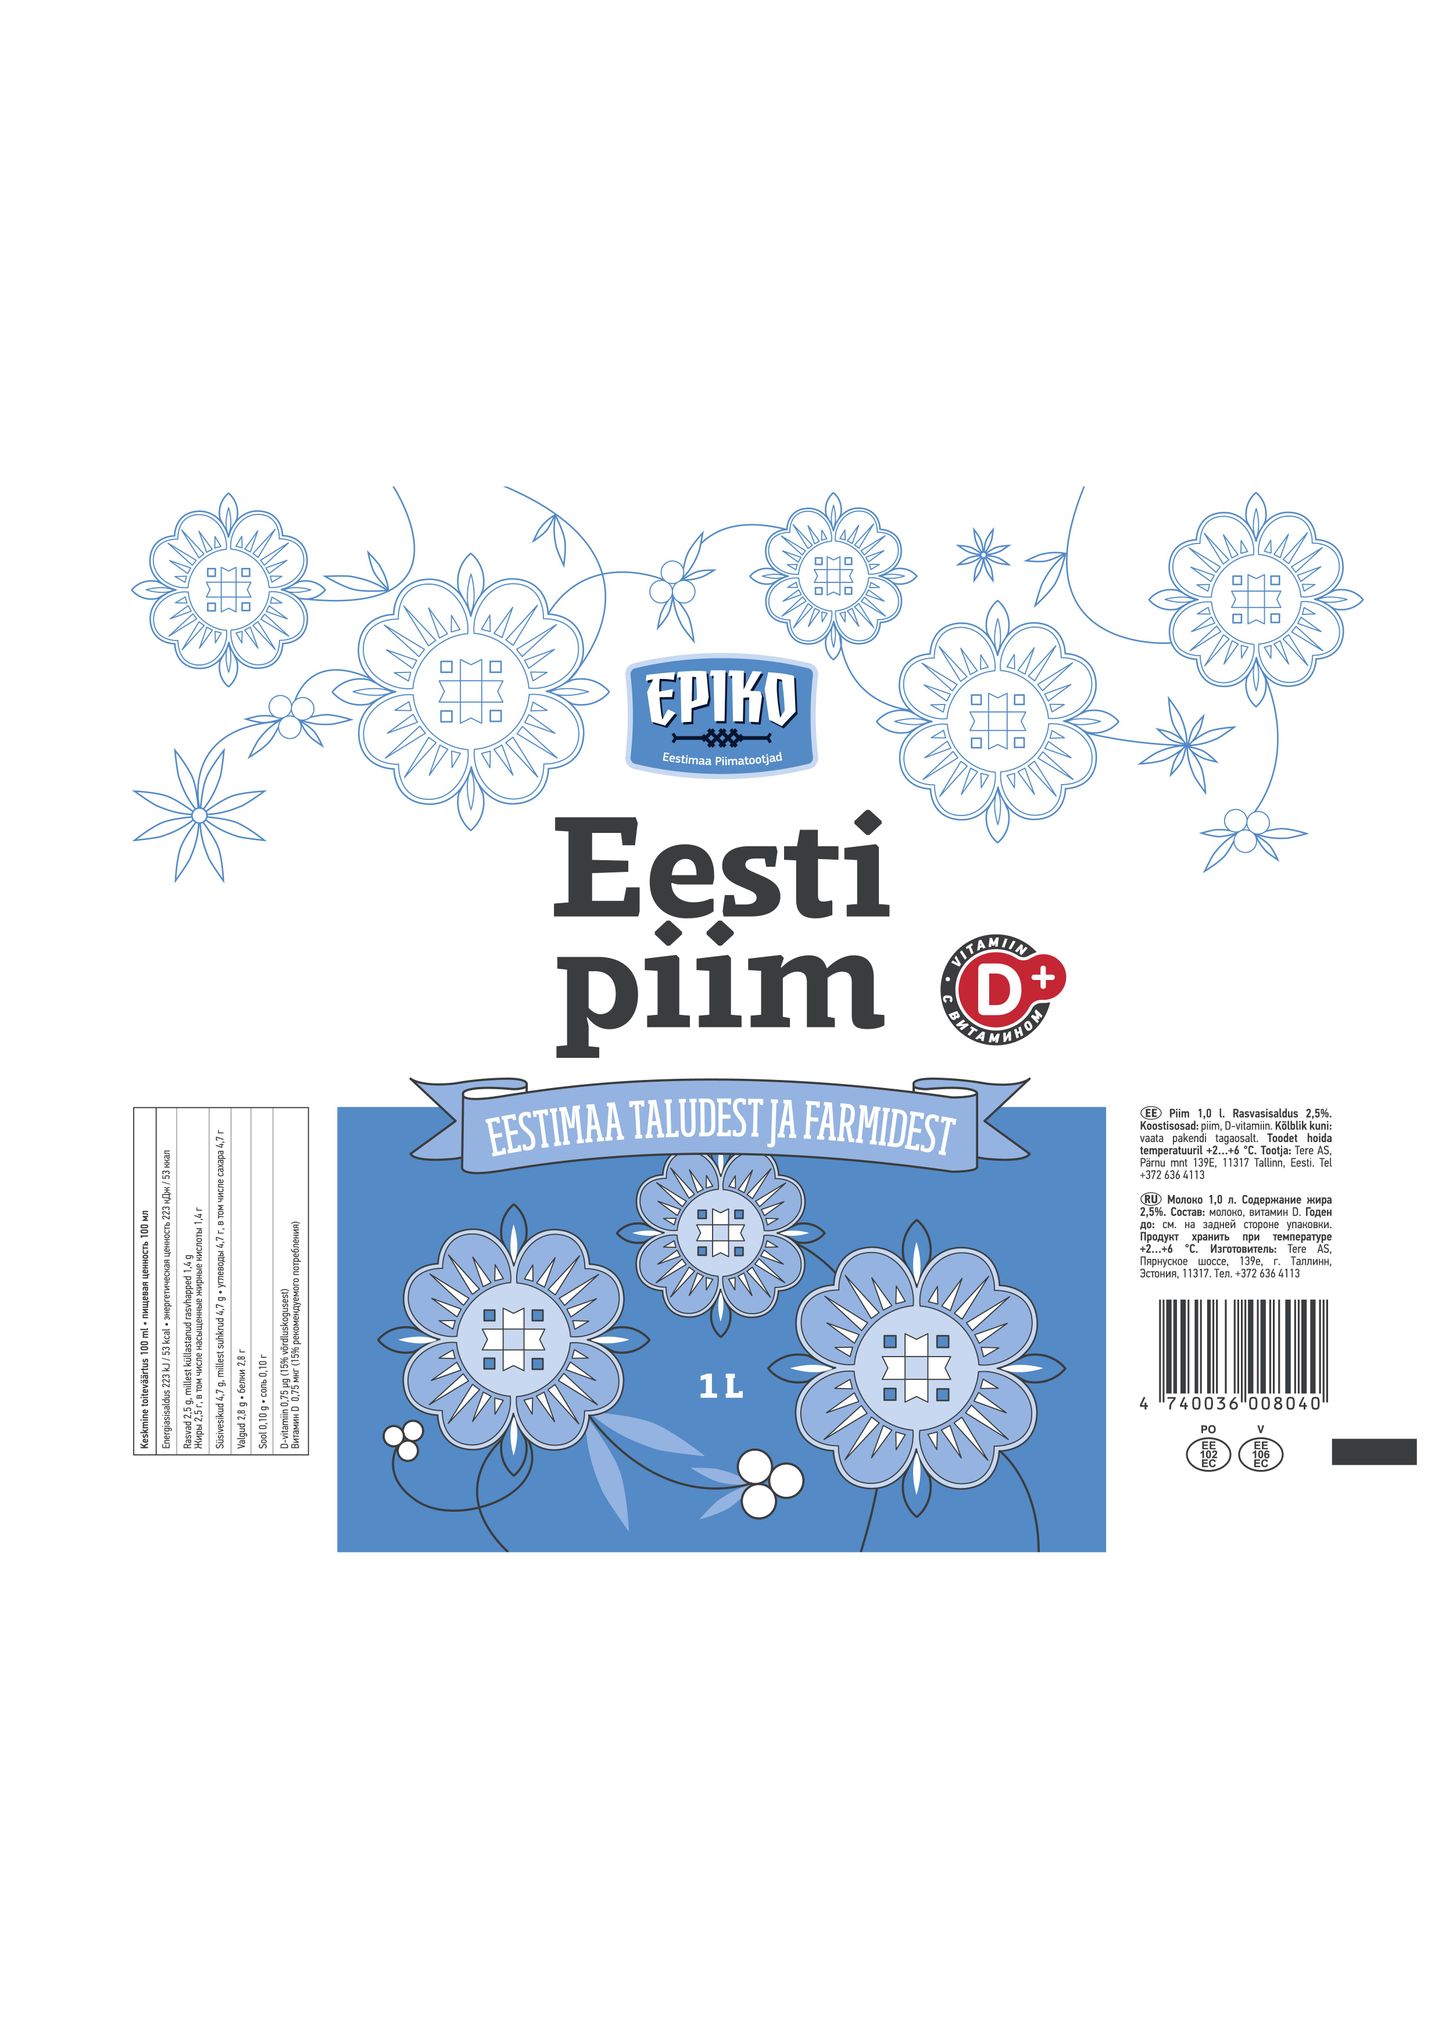 EPIKO uus kaubamärk «Eesti Piim».